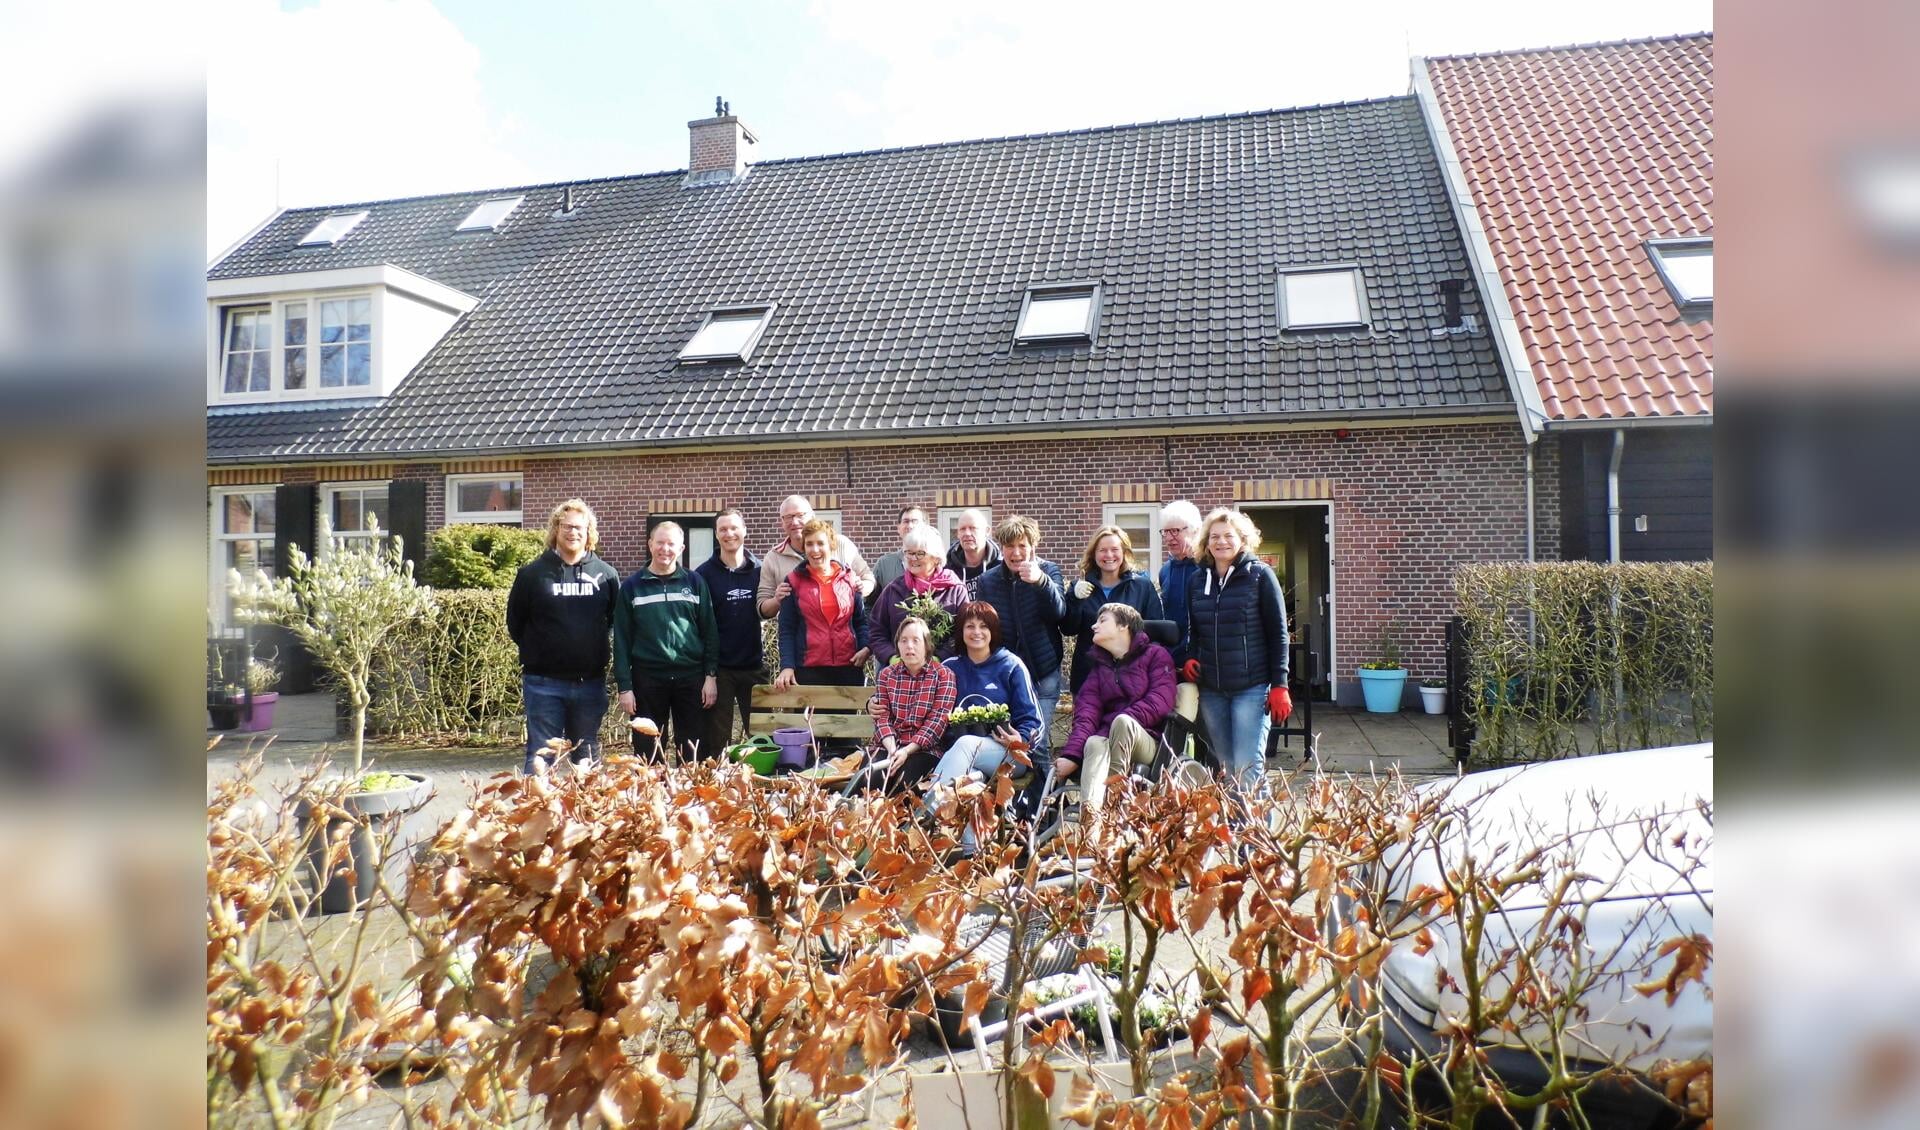  Genoeg mensen waren aanwezig tijdens NLdoet om de tuin van het Thomashuis Maartensdijk weer klaar te maken voor een lange mooie zomer.